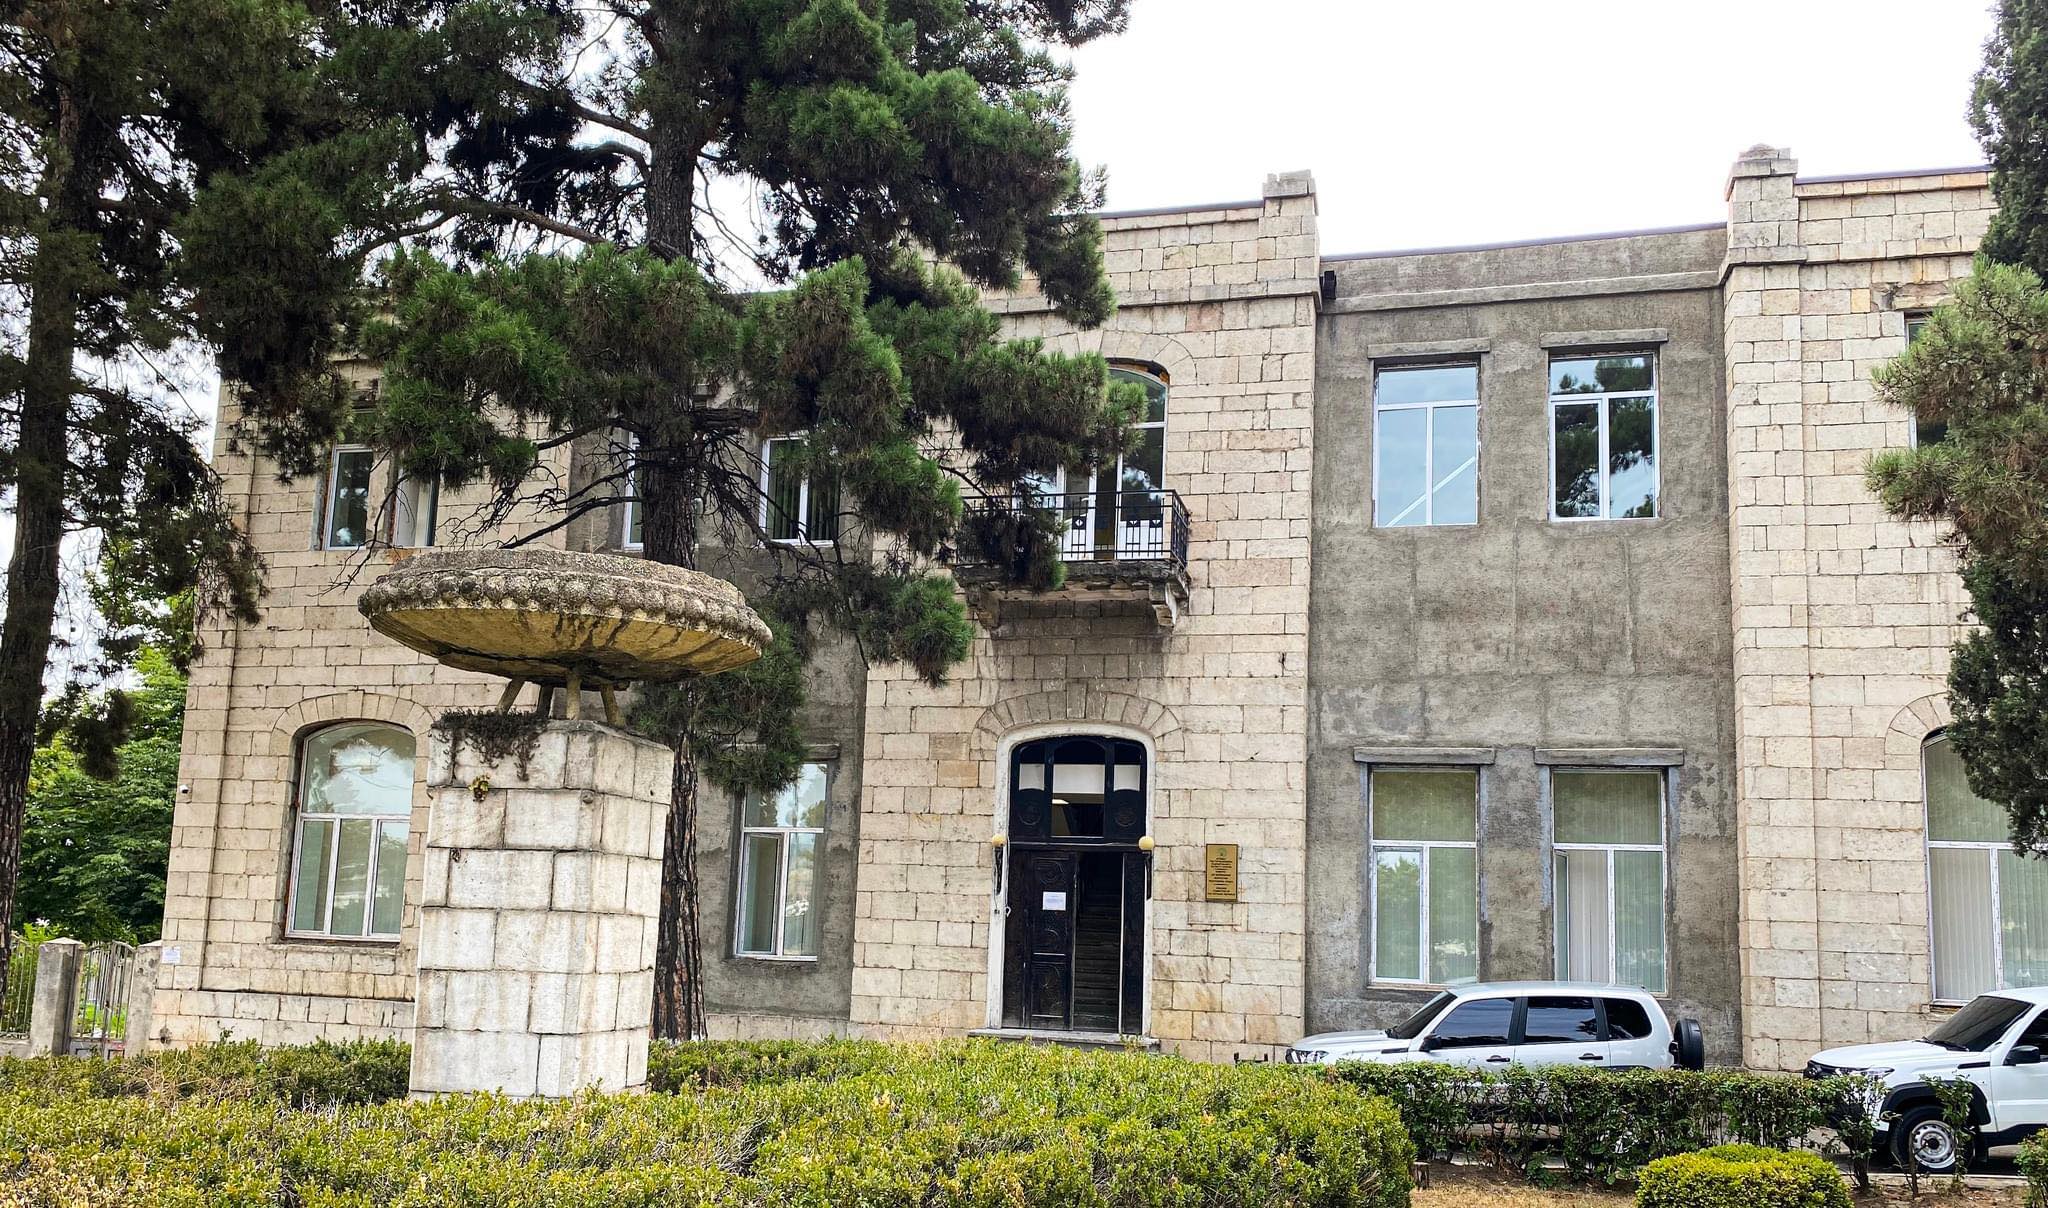 ԱՀ գլխավոր դատախազությունը պարզաբանել է Ստեփանակերտում գտնվող շենքերից մեկը Բակո Սահակյանին օտարելու մասին լուրերը 